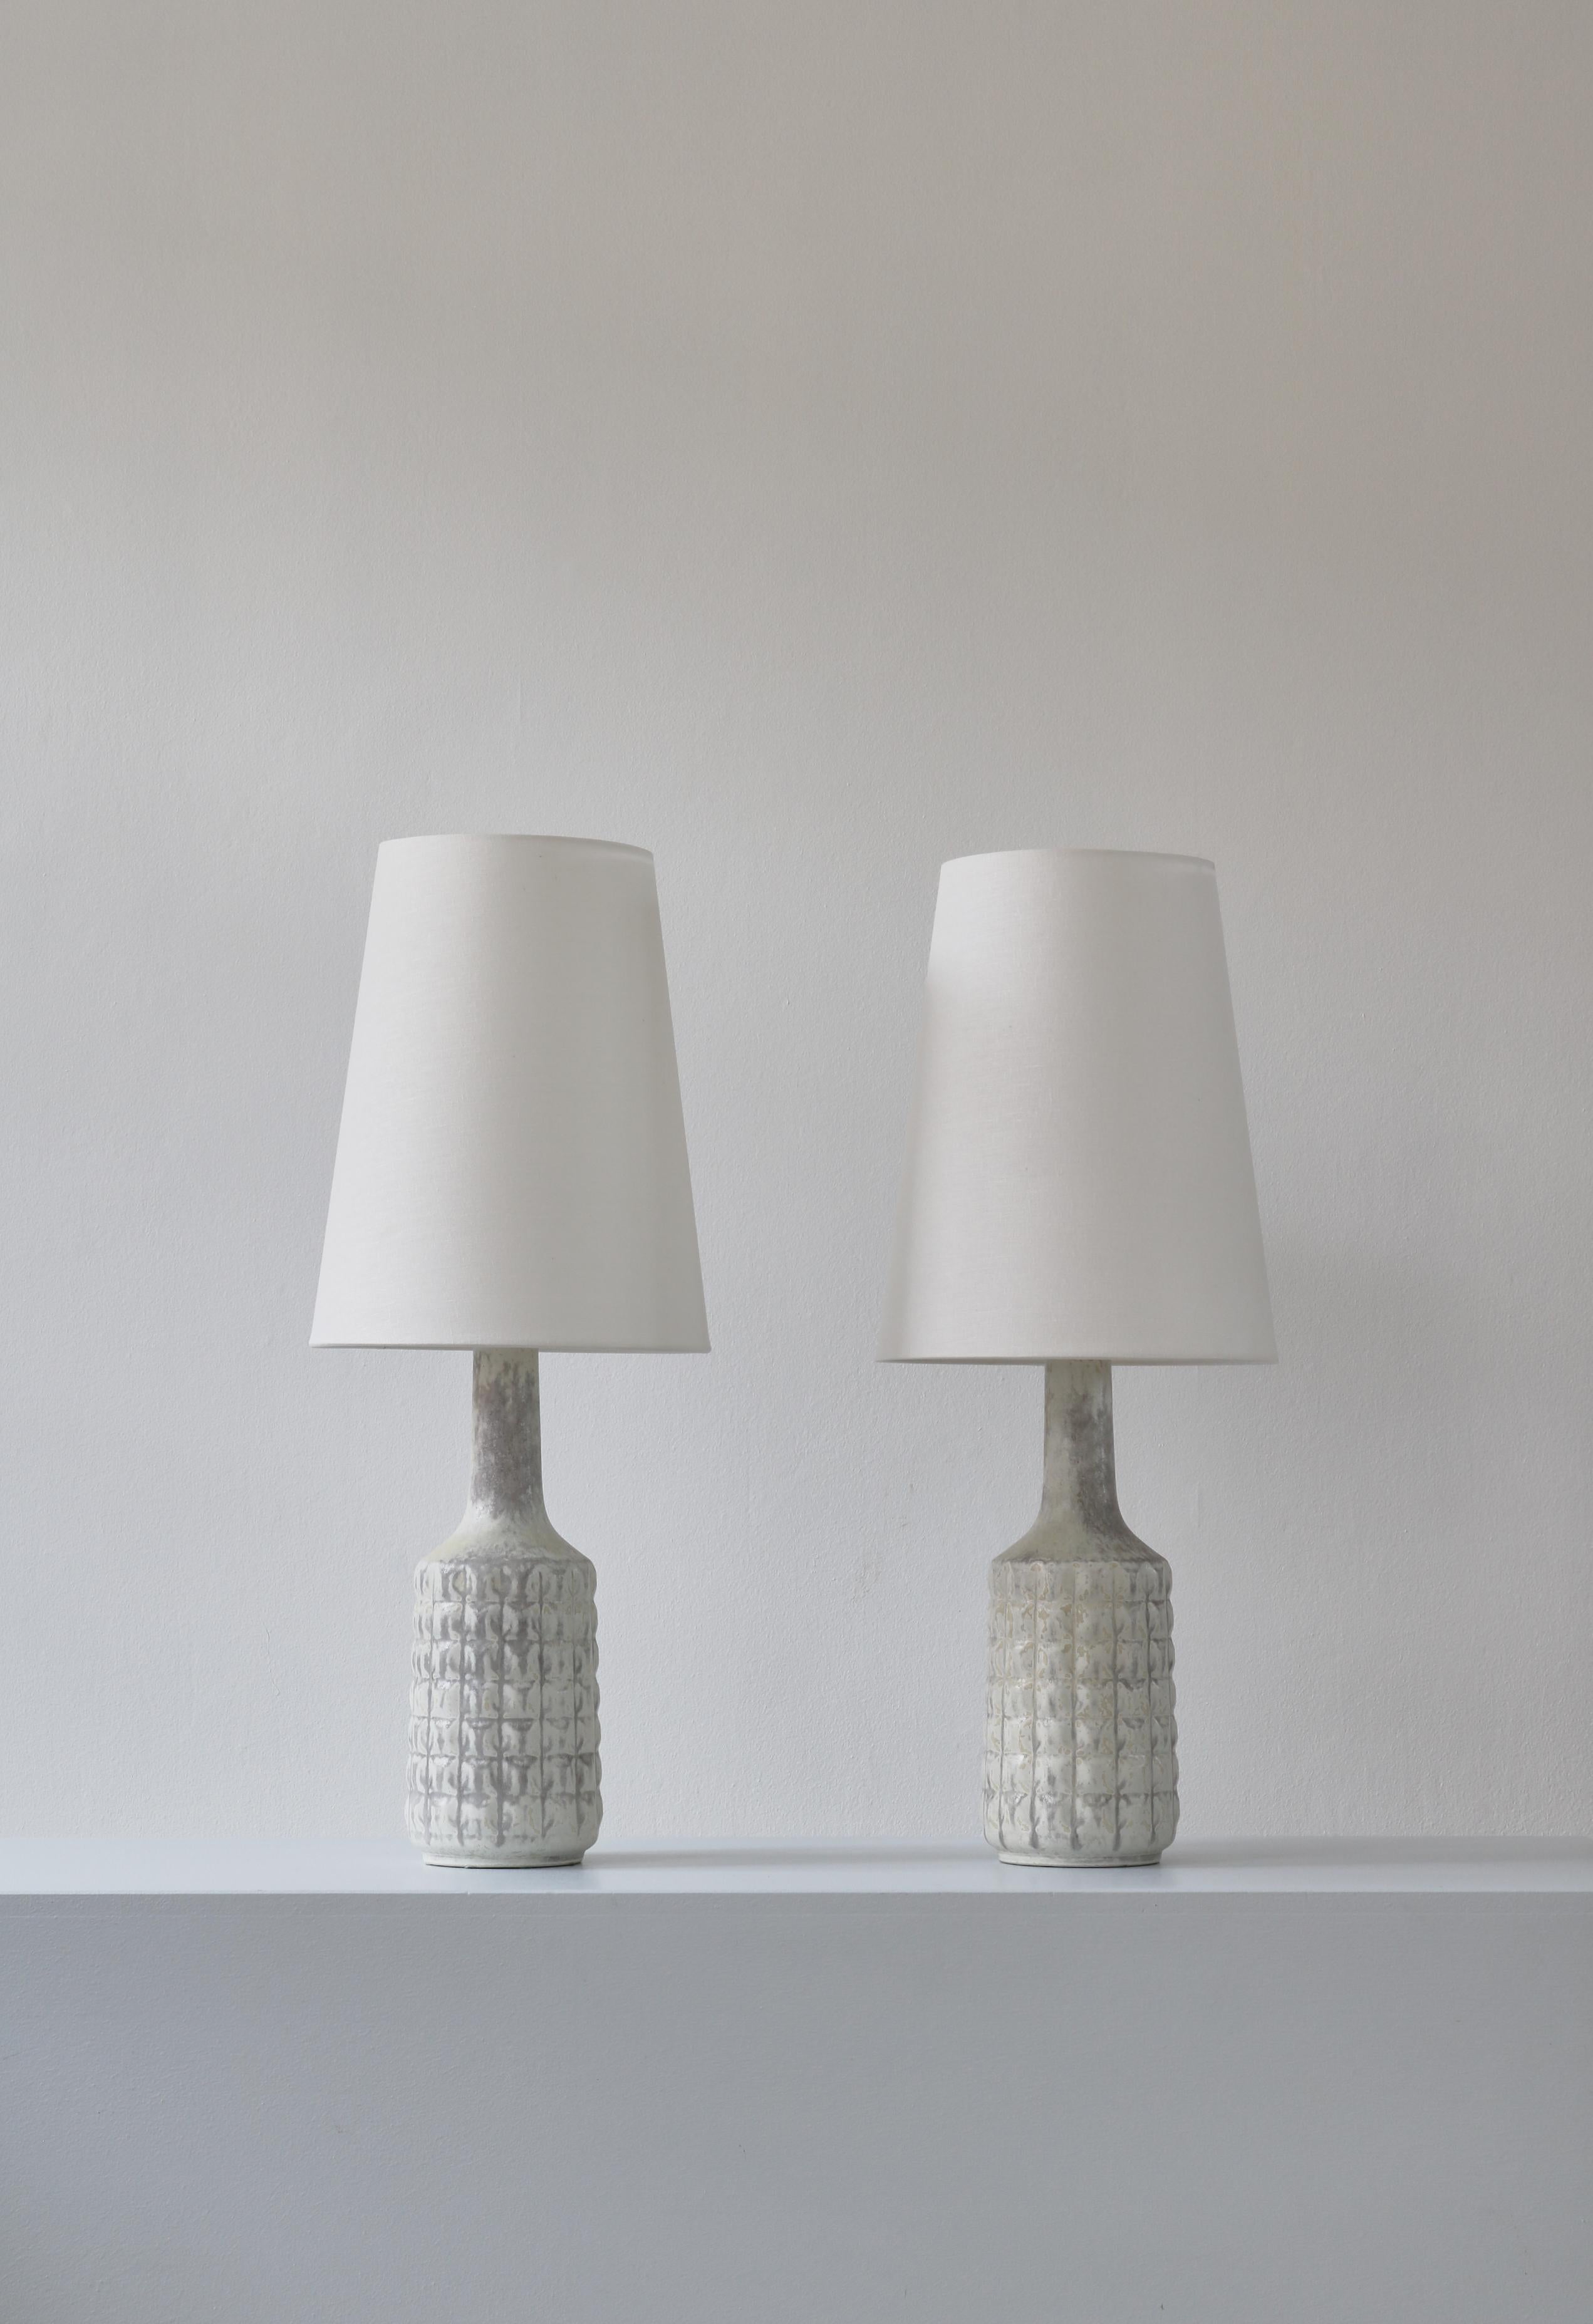 Une magnifique paire de lampes de table uniques The Modern Scandinavian, fabriquées dans l'atelier de grès de Desiree à Copenhague dans les années 1960. Les pieds de lampe sont faits à la main et décorés d'un étonnant glaçage blanc et gris. Les deux